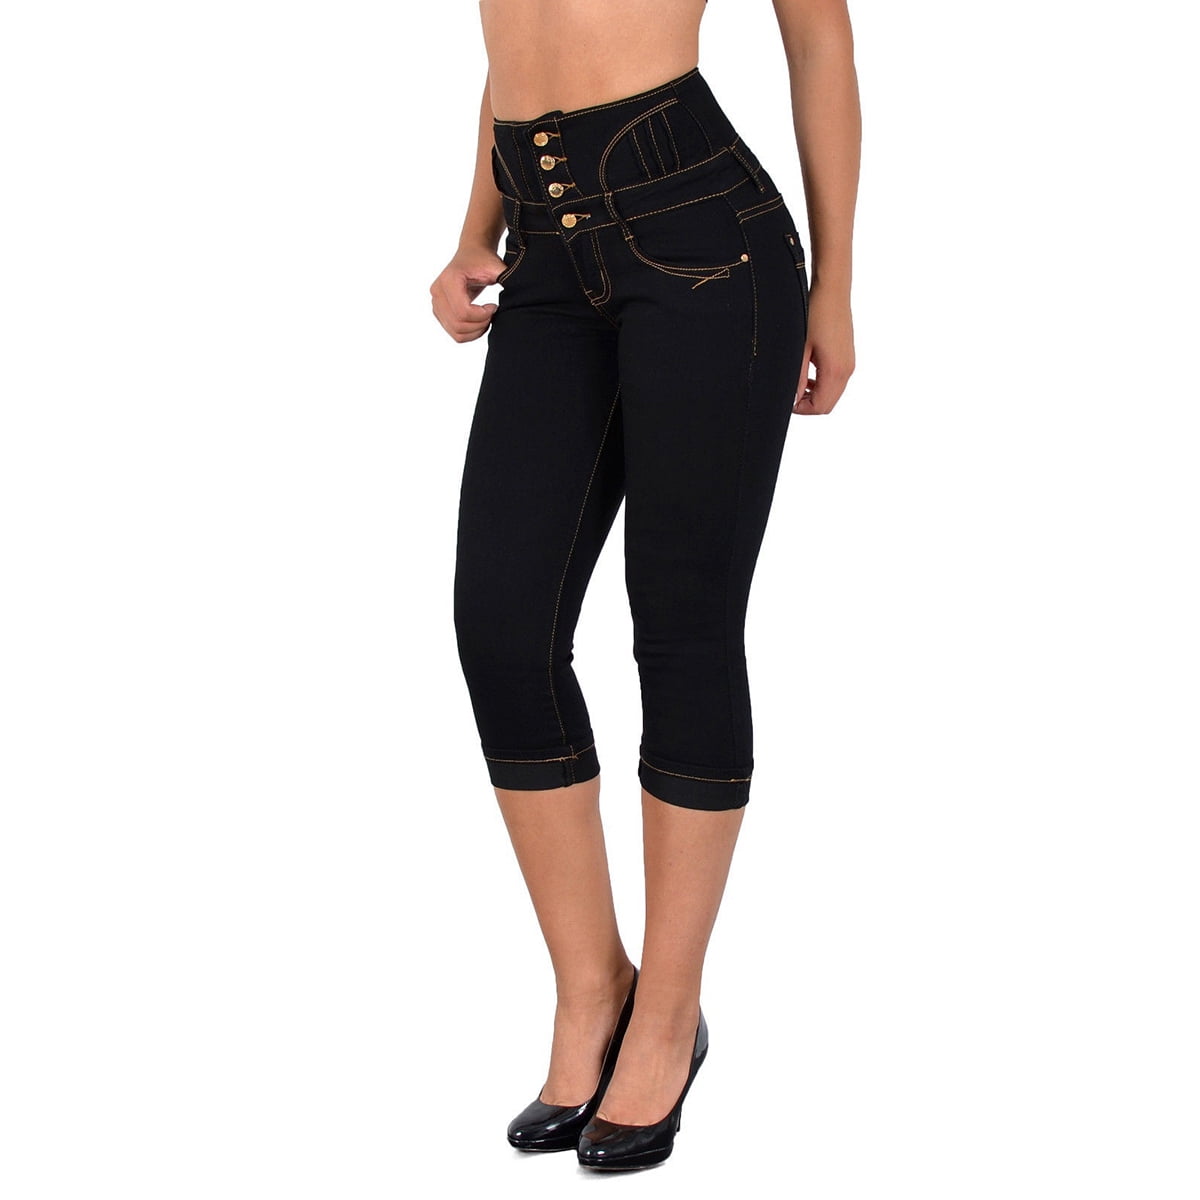 Women's High Waist 3/4 Jeans Pants Walmart.com